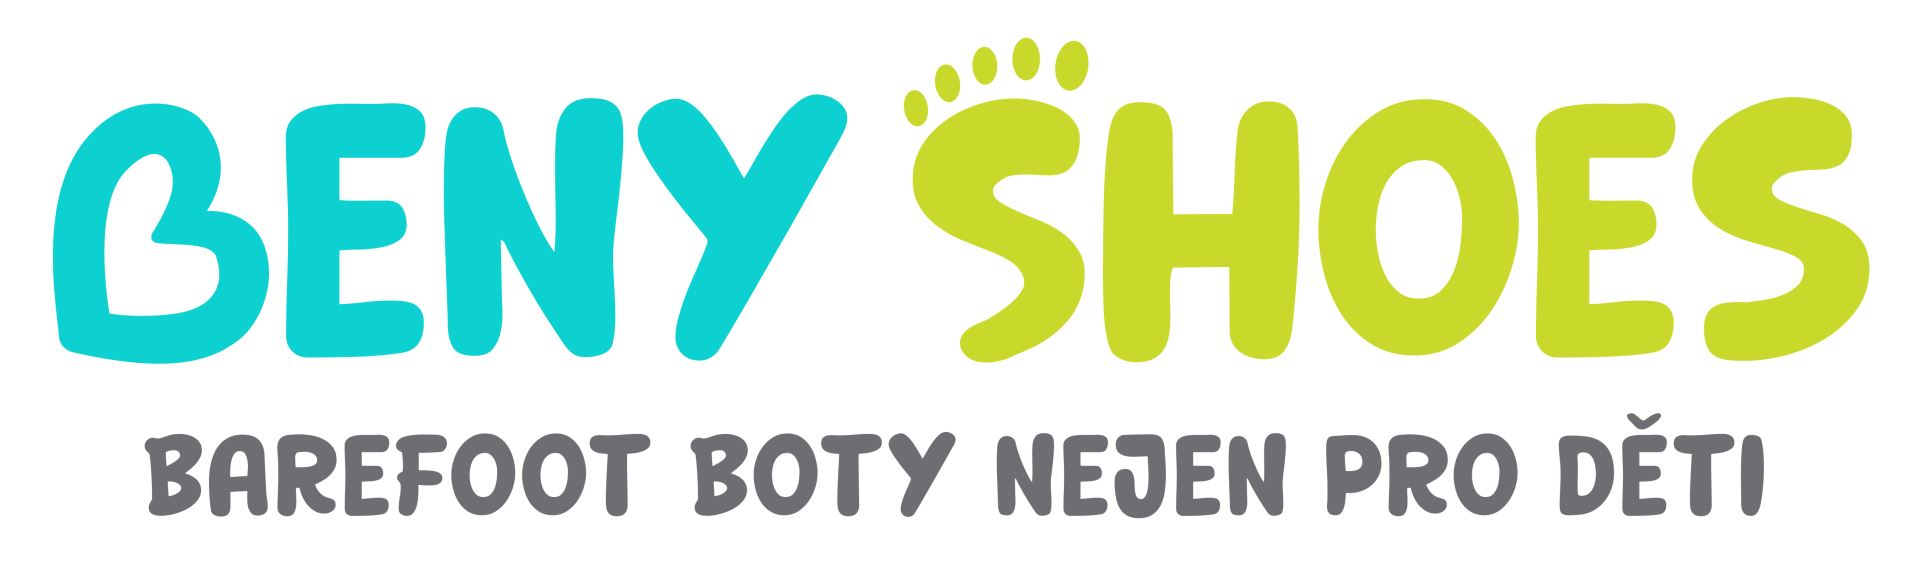 logo Beny shoes